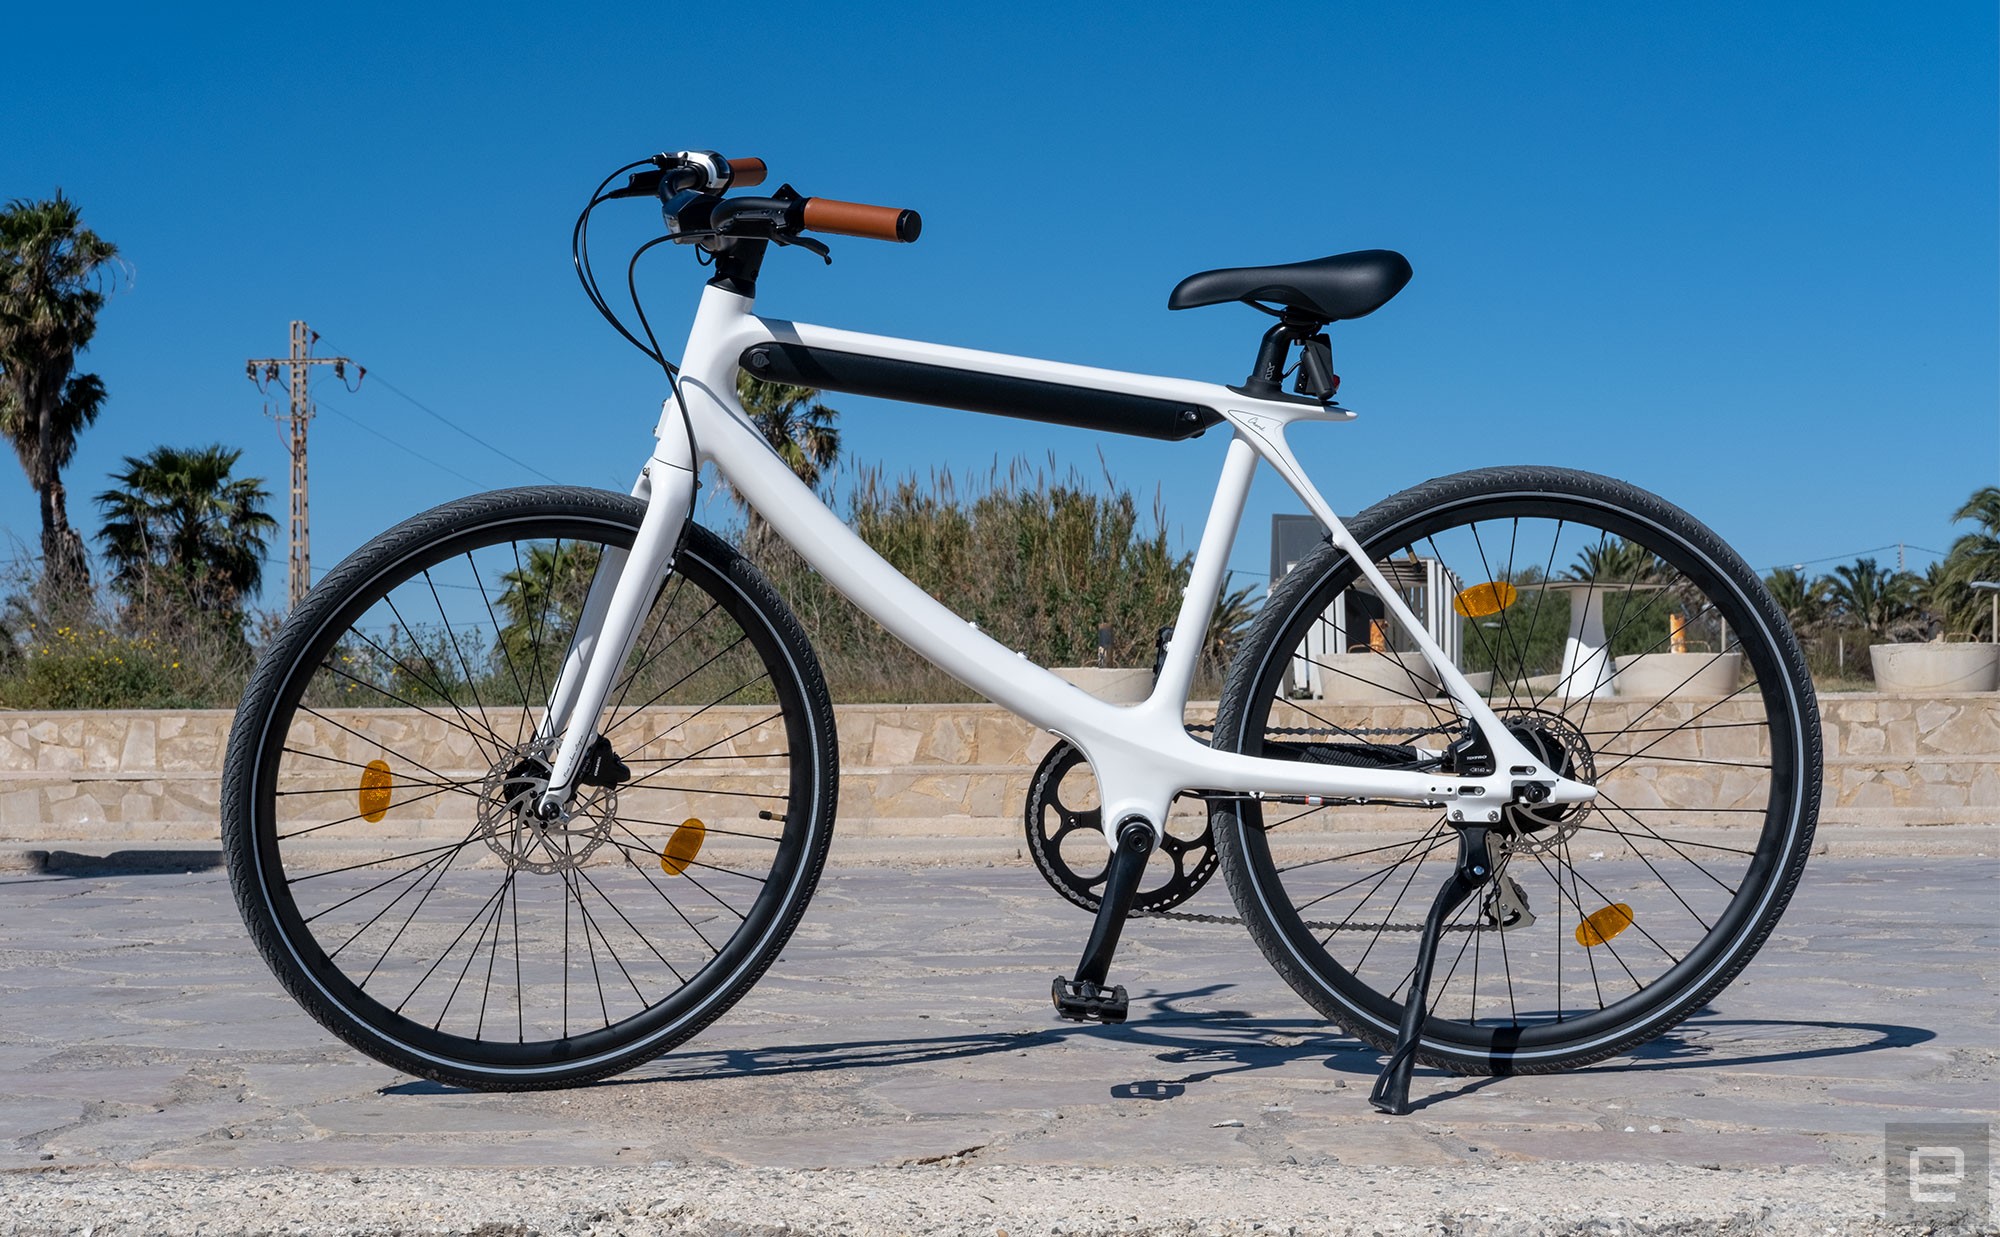 Urtopia's Chord e-bike pictured on a sunny promenade.